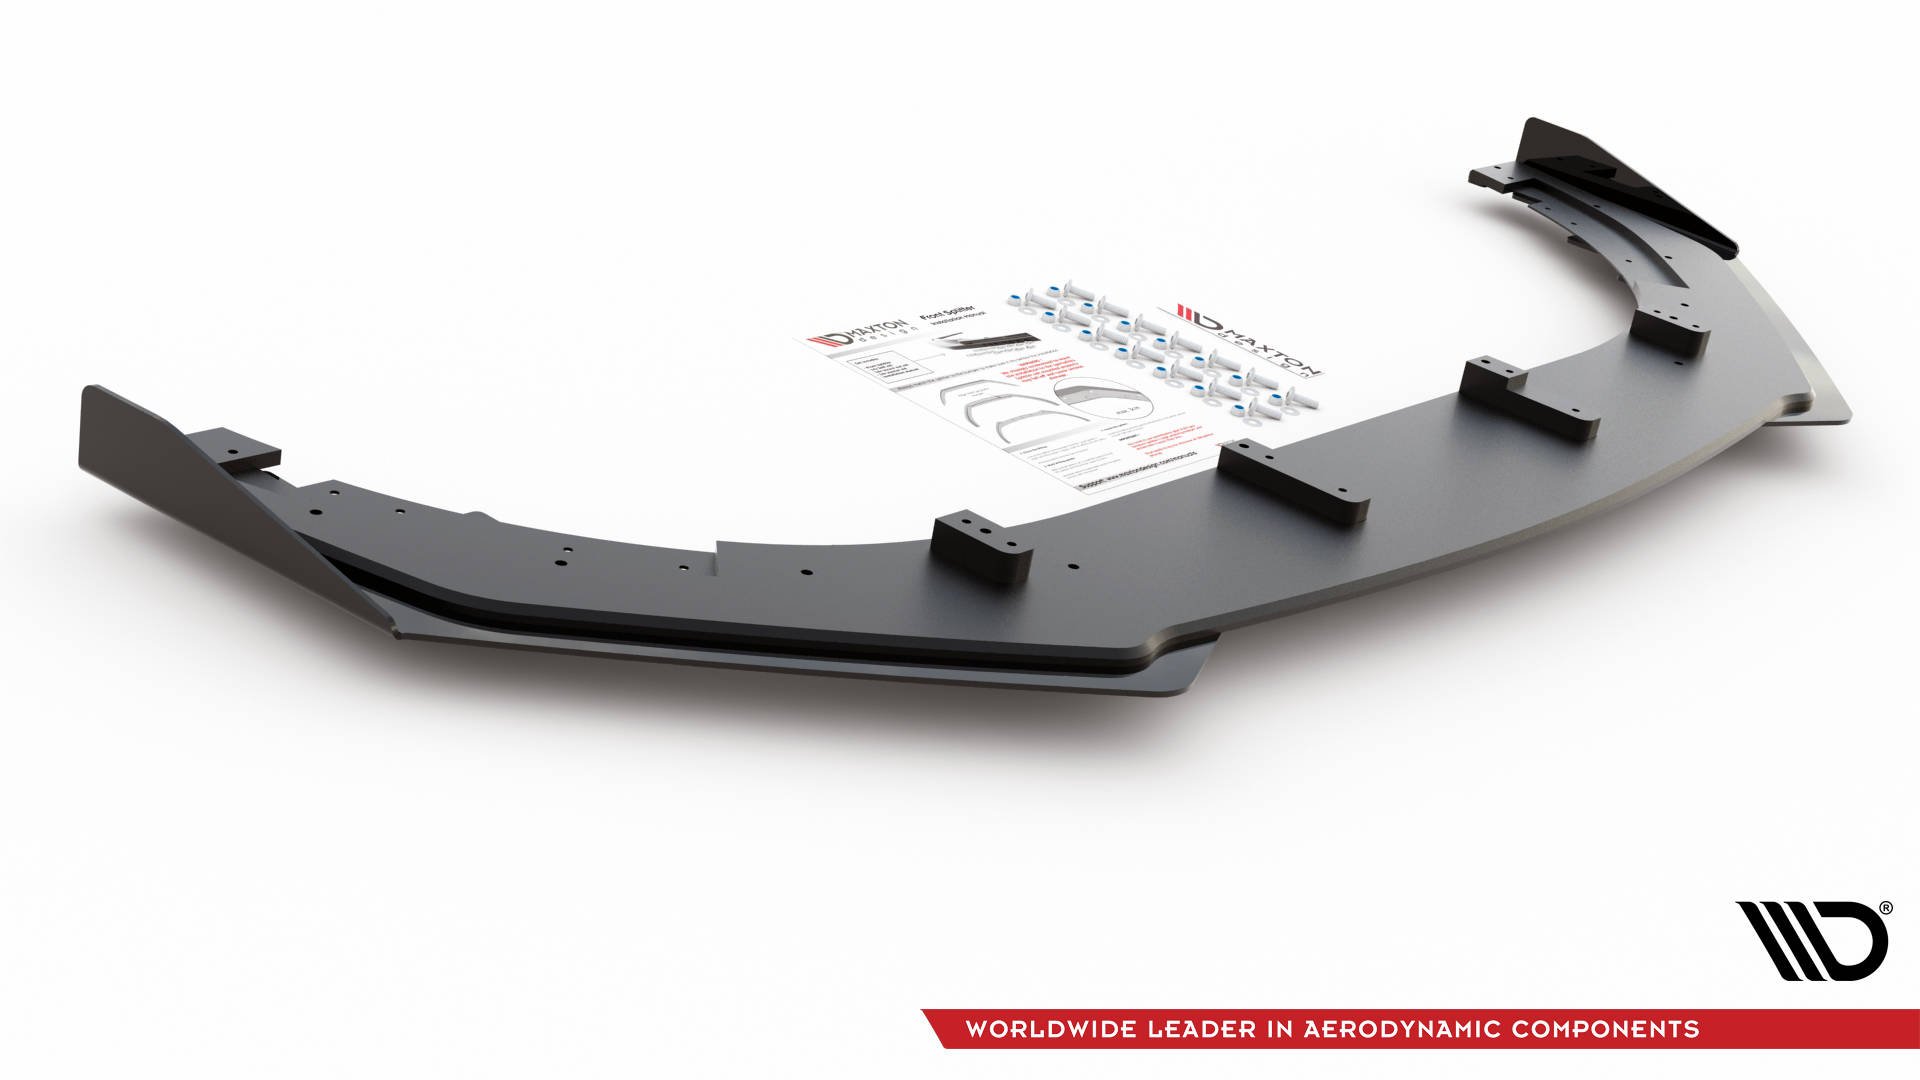 Maxton Design Robuste Racing Front Ansatz V.3 für passend +Flaps für Volkswagen Golf GTI Mk6 schwarz Hochglanz